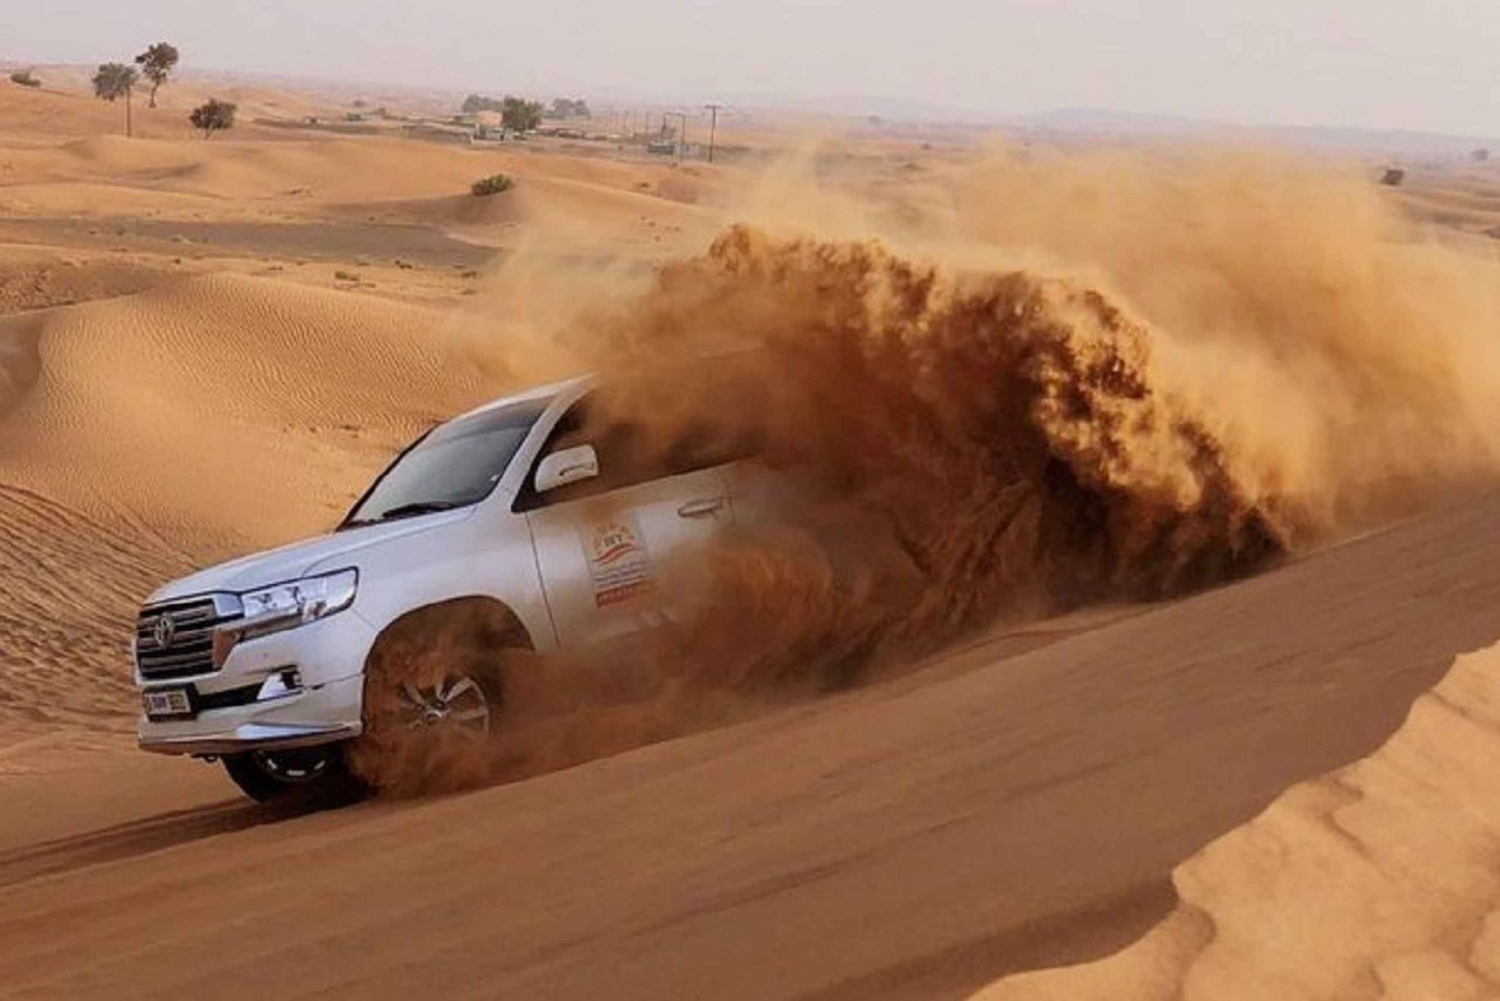 Dubai: Red Dunes Morning Desert Quad, Buggy eller 4x4-tur i öknen